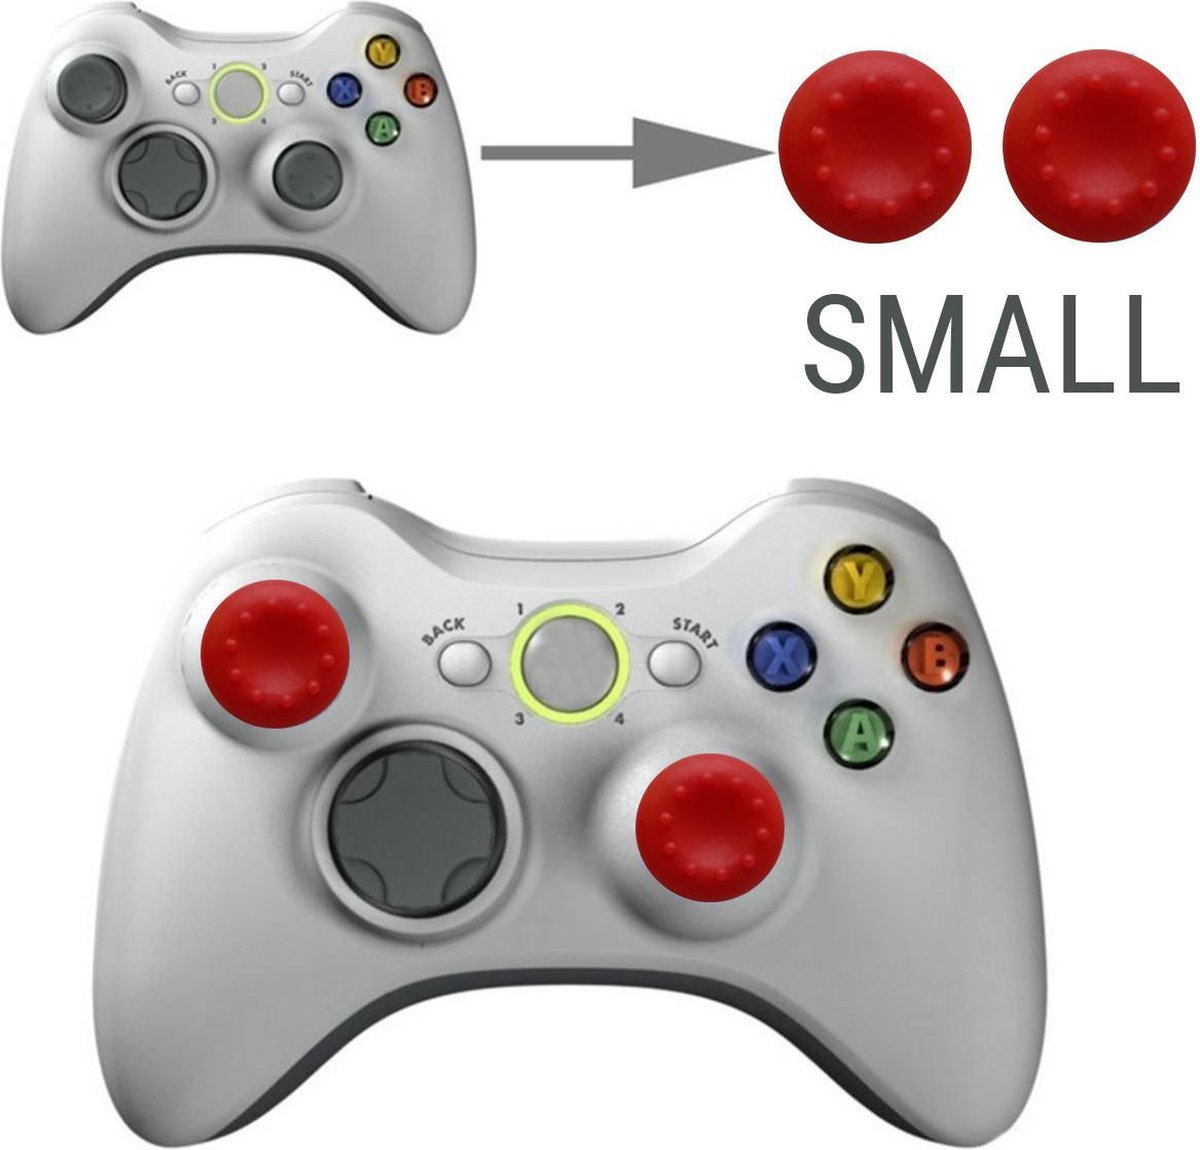 Thumb grips - Controller Thumbgrips - Joystick Cap - Thumbsticks - Thumb Grip Cap geschikt voor Switch, Switch Pro, PS4 en Xbox - 2 stuks Klein 10 dots extra grip Rood